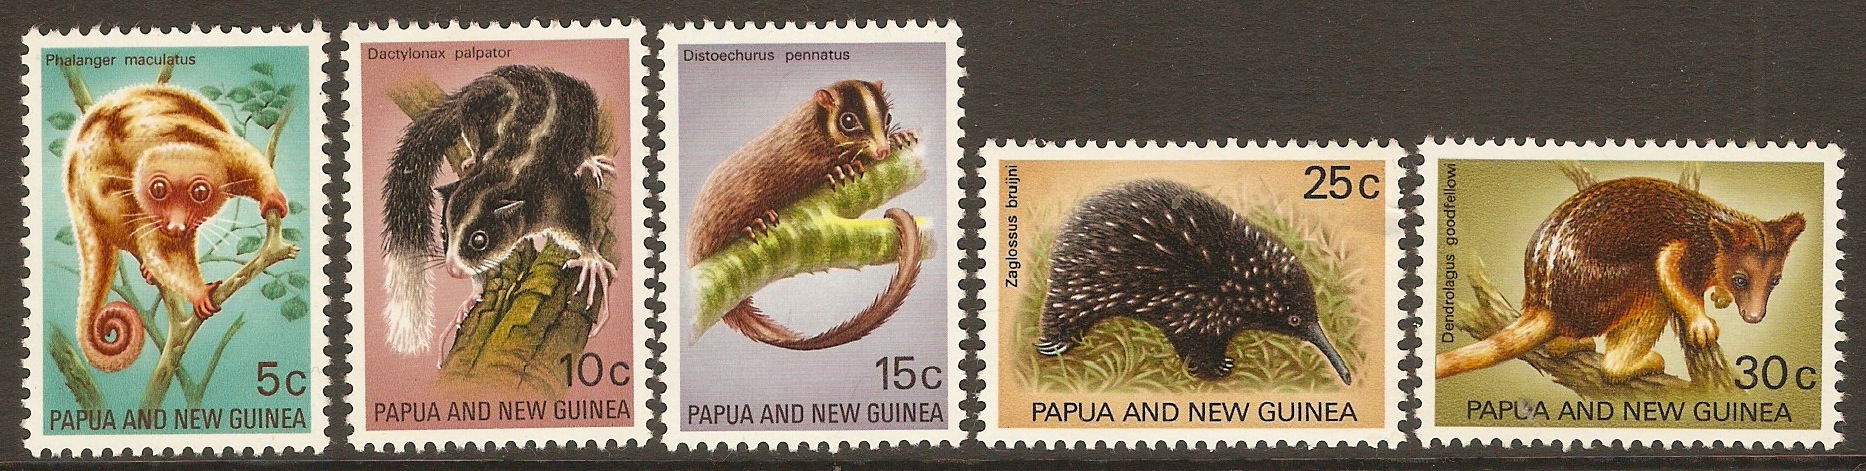 Papua New Guinea 1971 Fauna Conservation set. SG195-SG199. - Click Image to Close